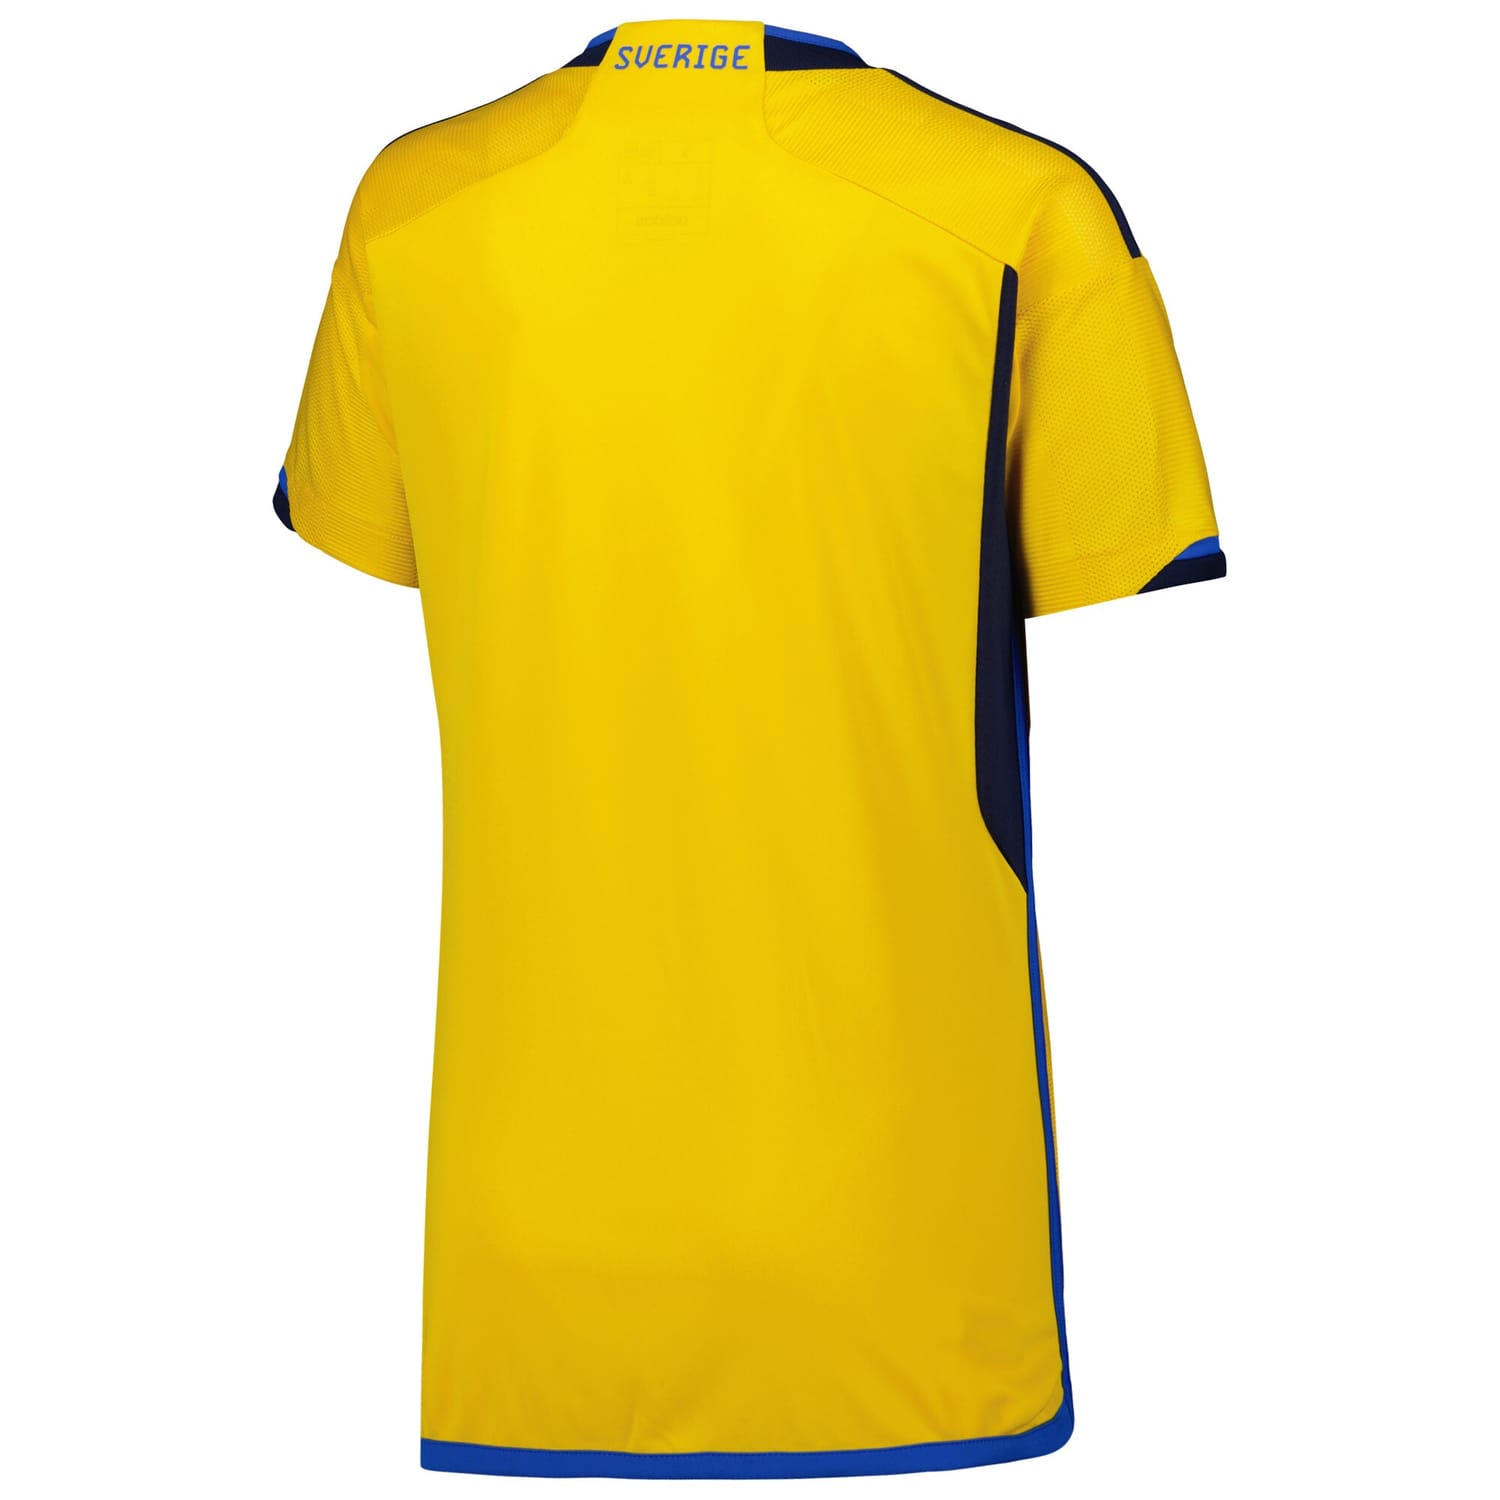 Sweden National Team Home Jersey Shirt Yellow 2022-23 for Women